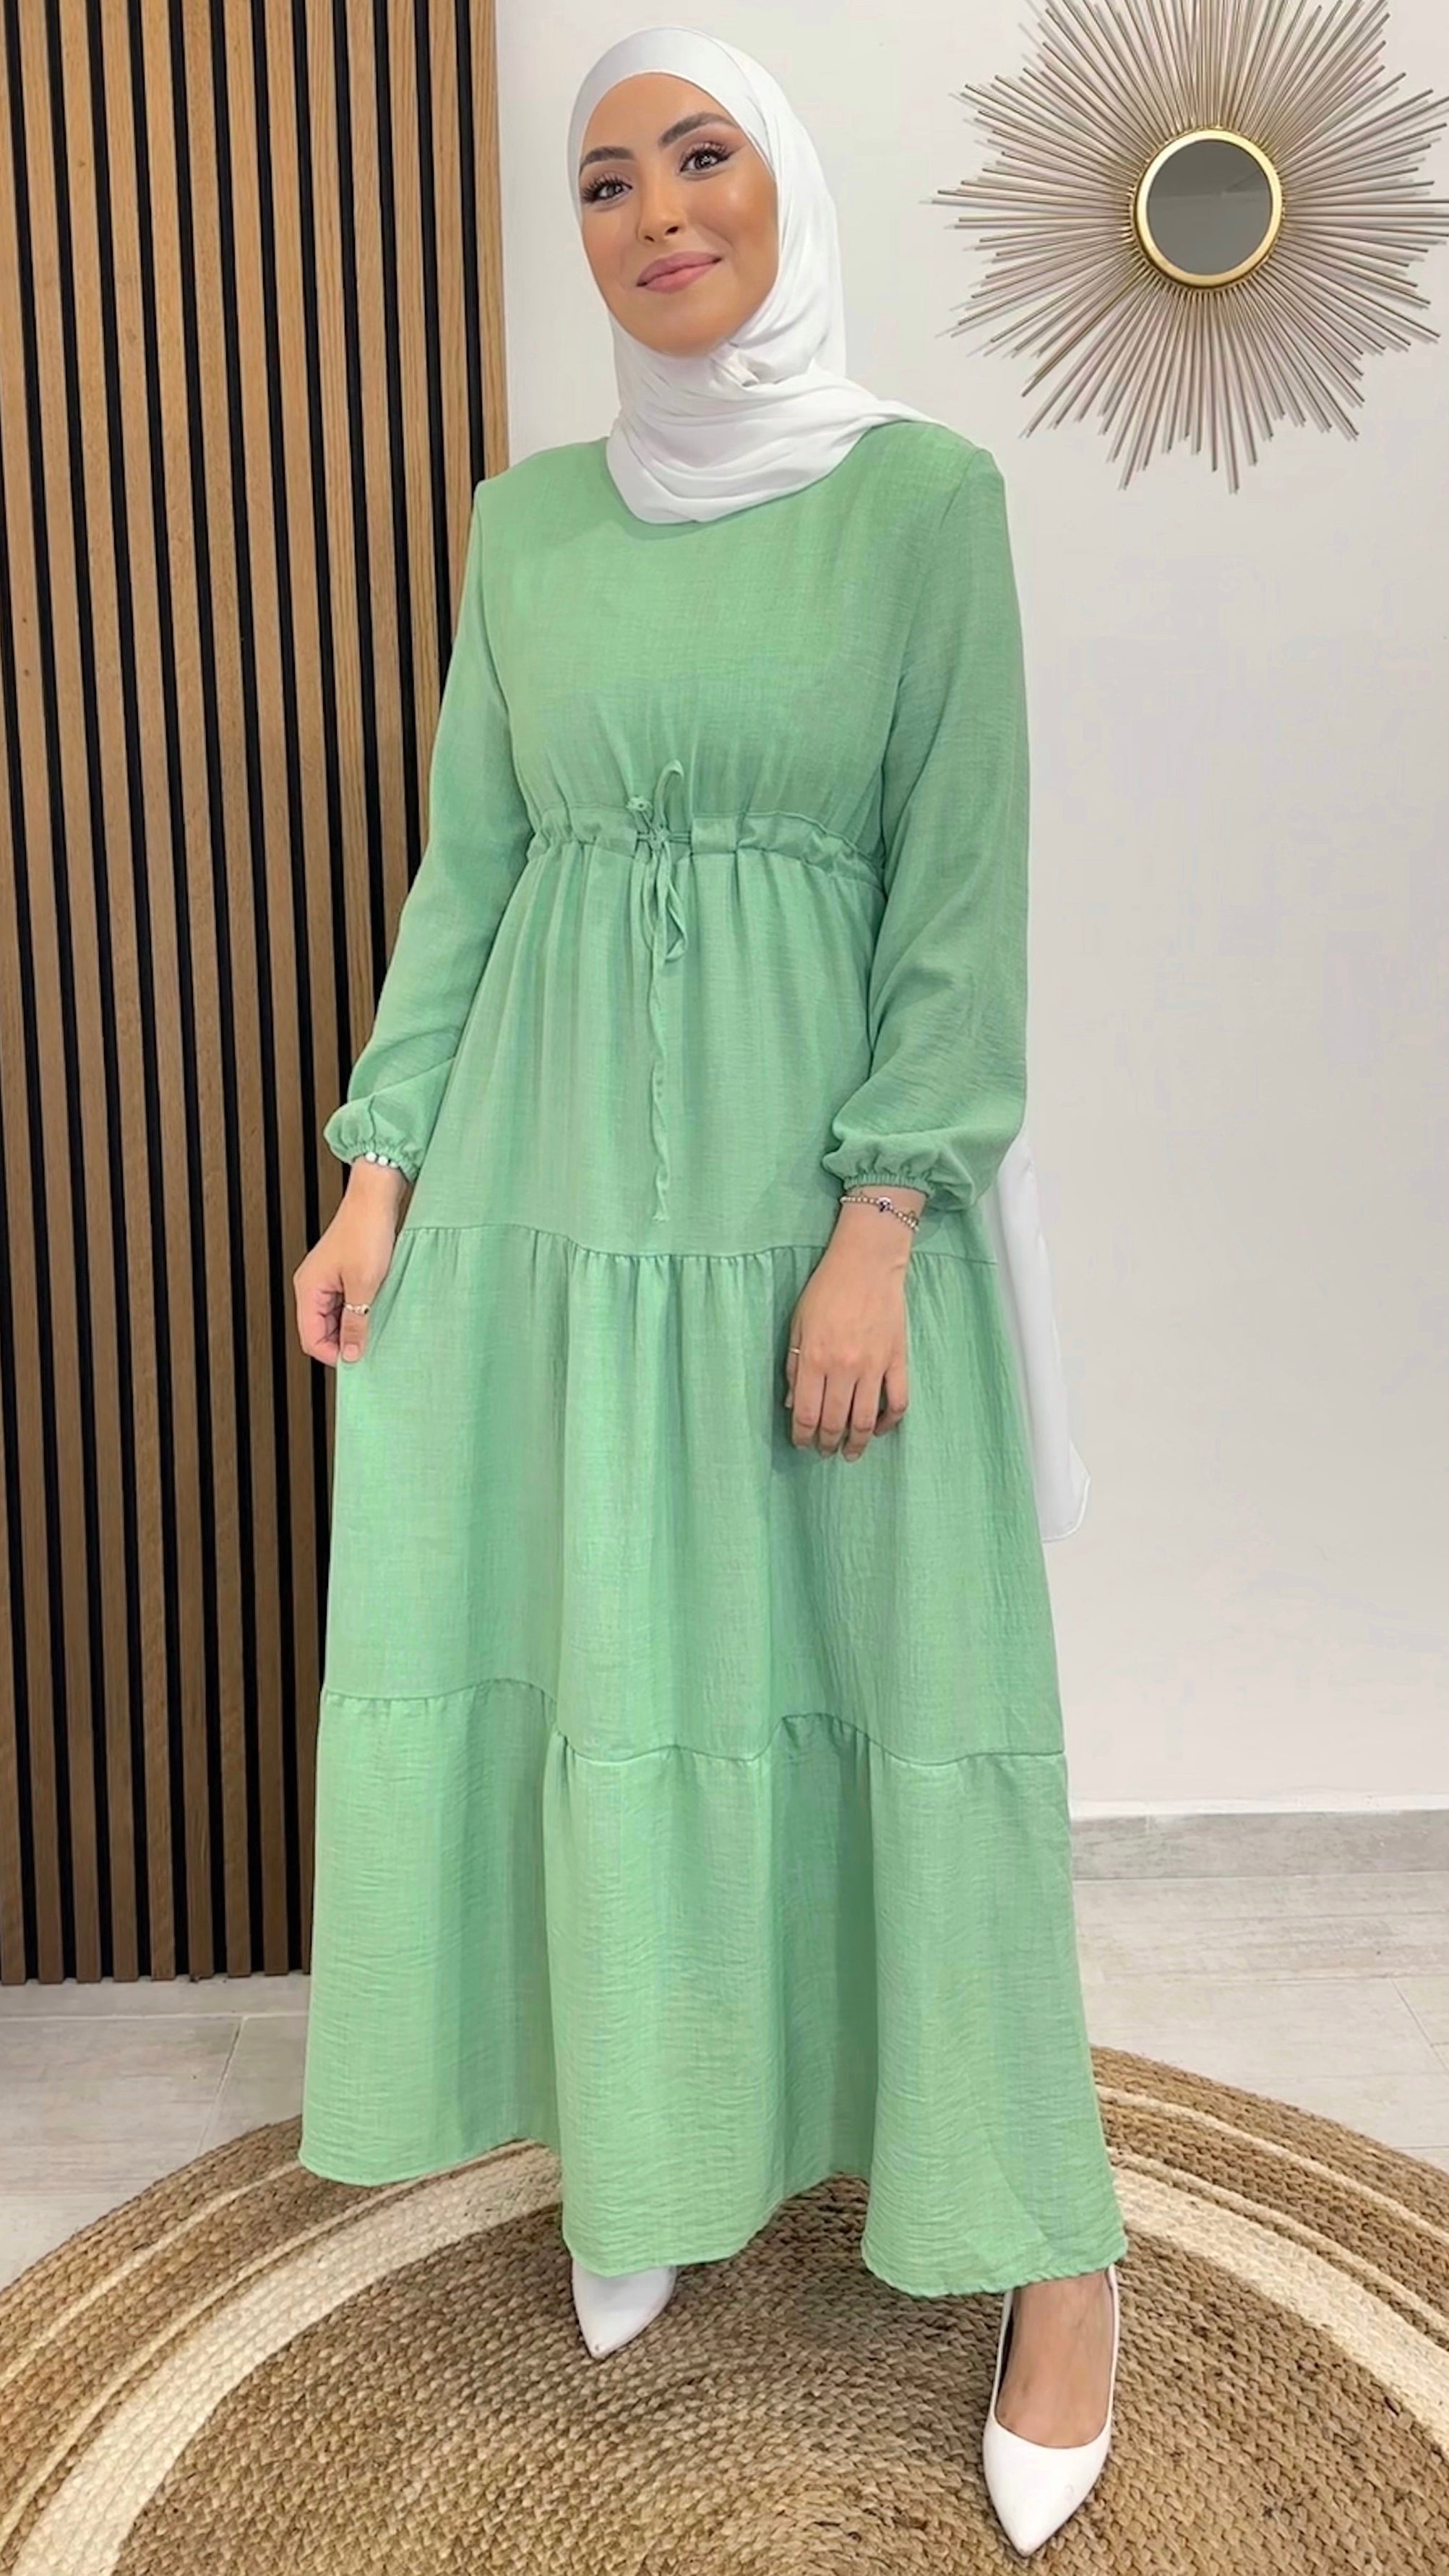 Honeyed Dress Verde - dress - vestito con taglio a campana - verde lime - polsi arricciati - laccio in vita , jersey bianco- tacchi bianchi - sorriso- donna musulmane 
